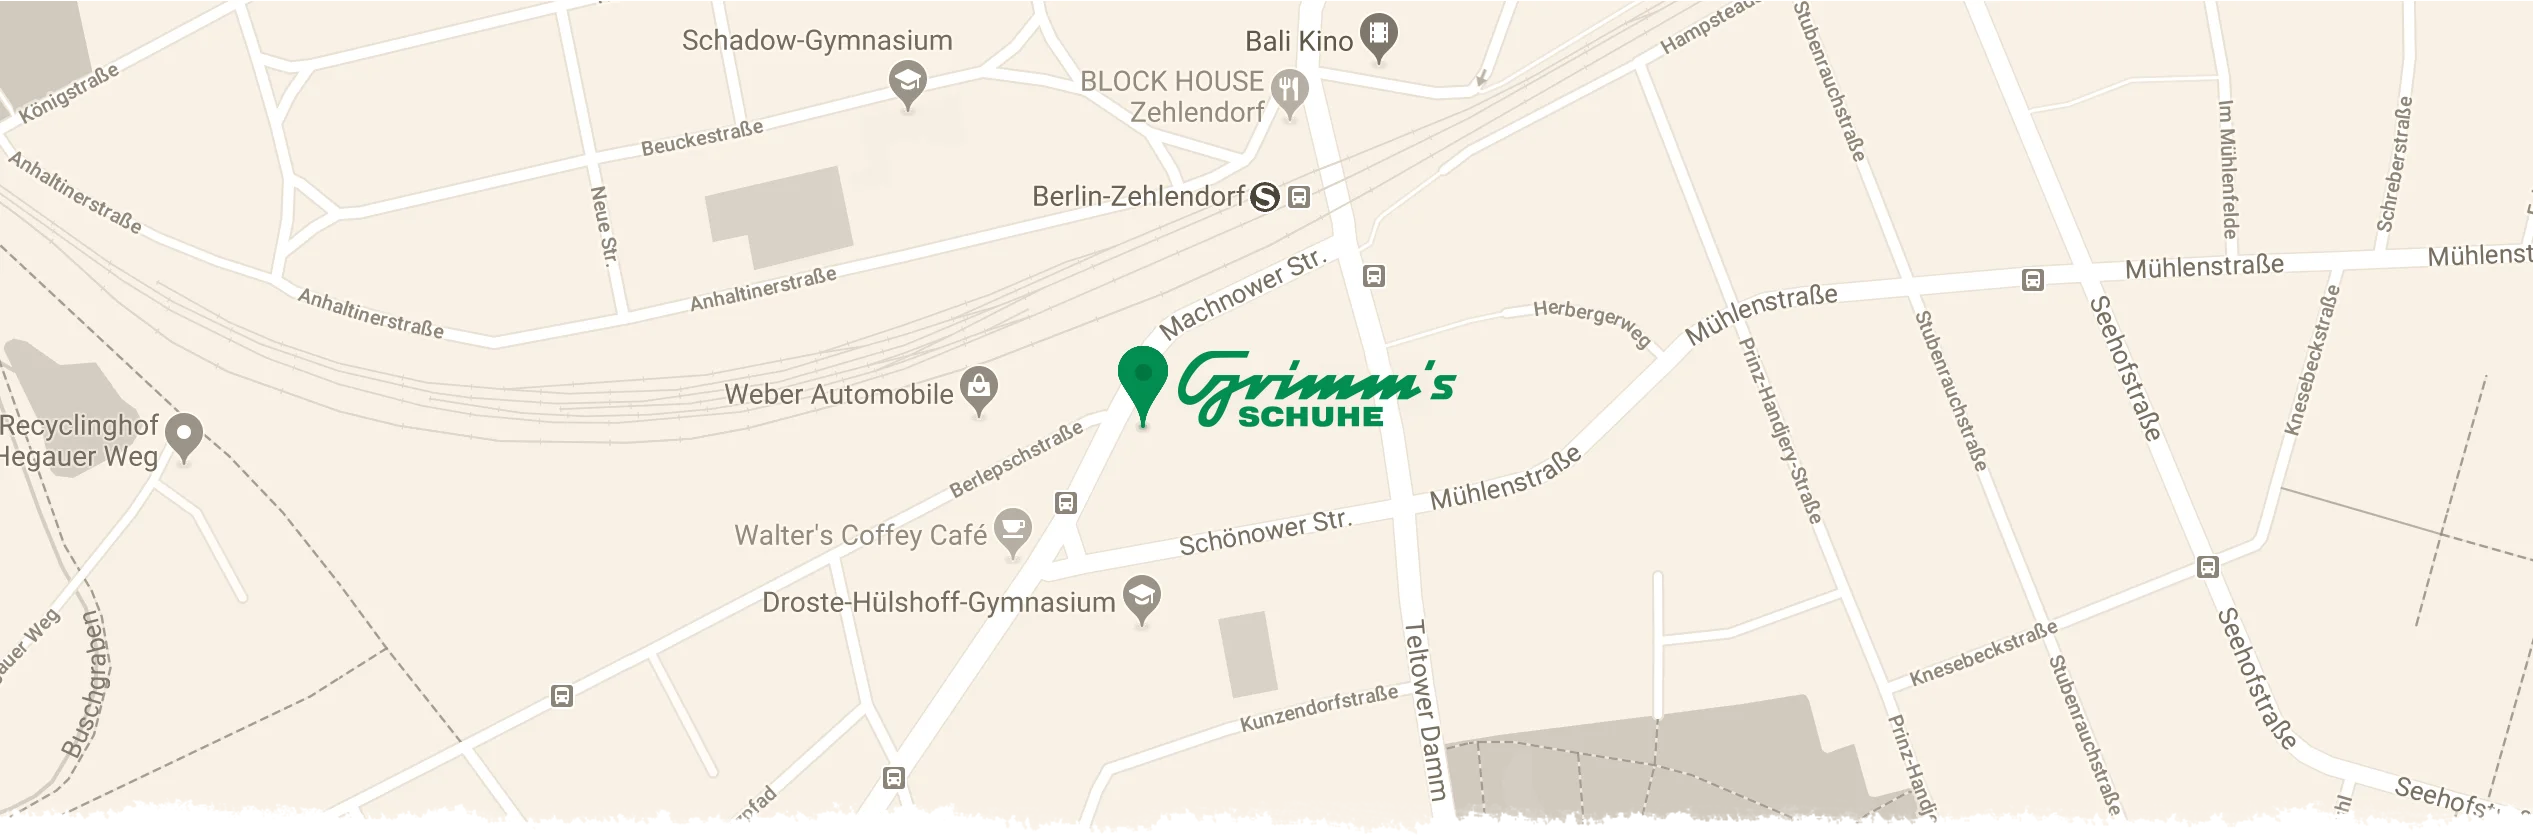 Grimms Schuhe Berlin Standort Karte